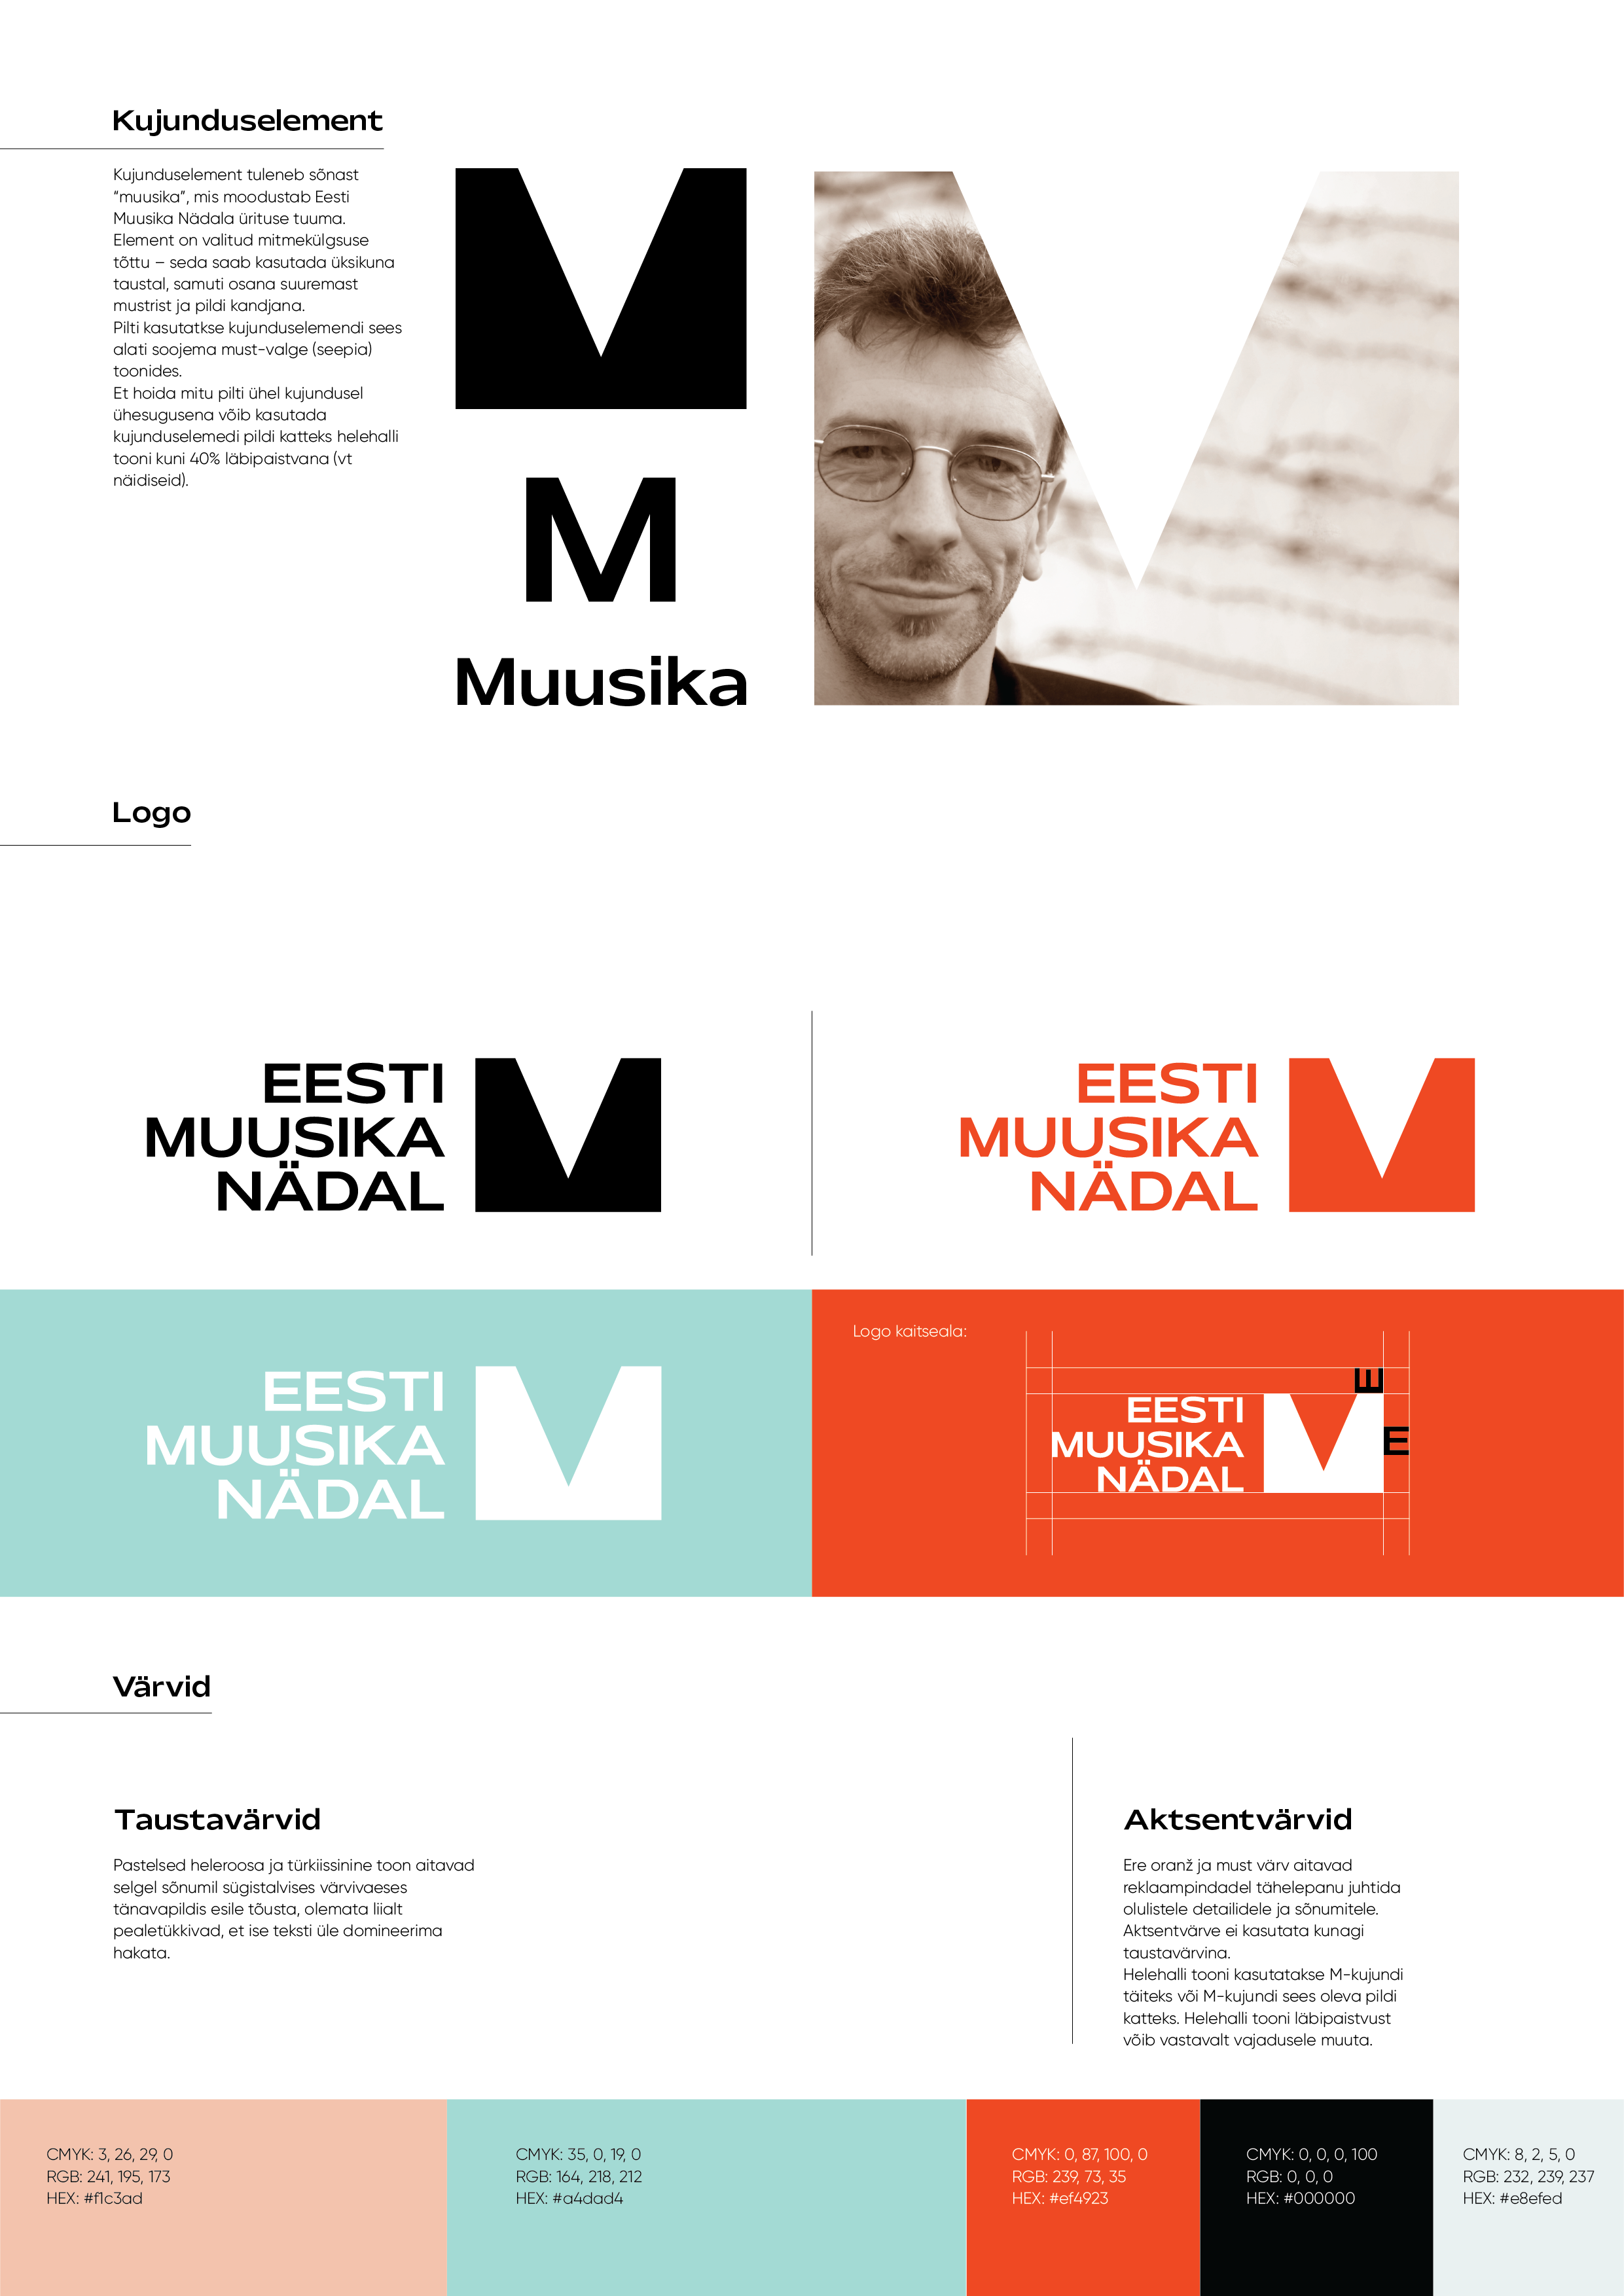 Eesti Muusika Nädal - image